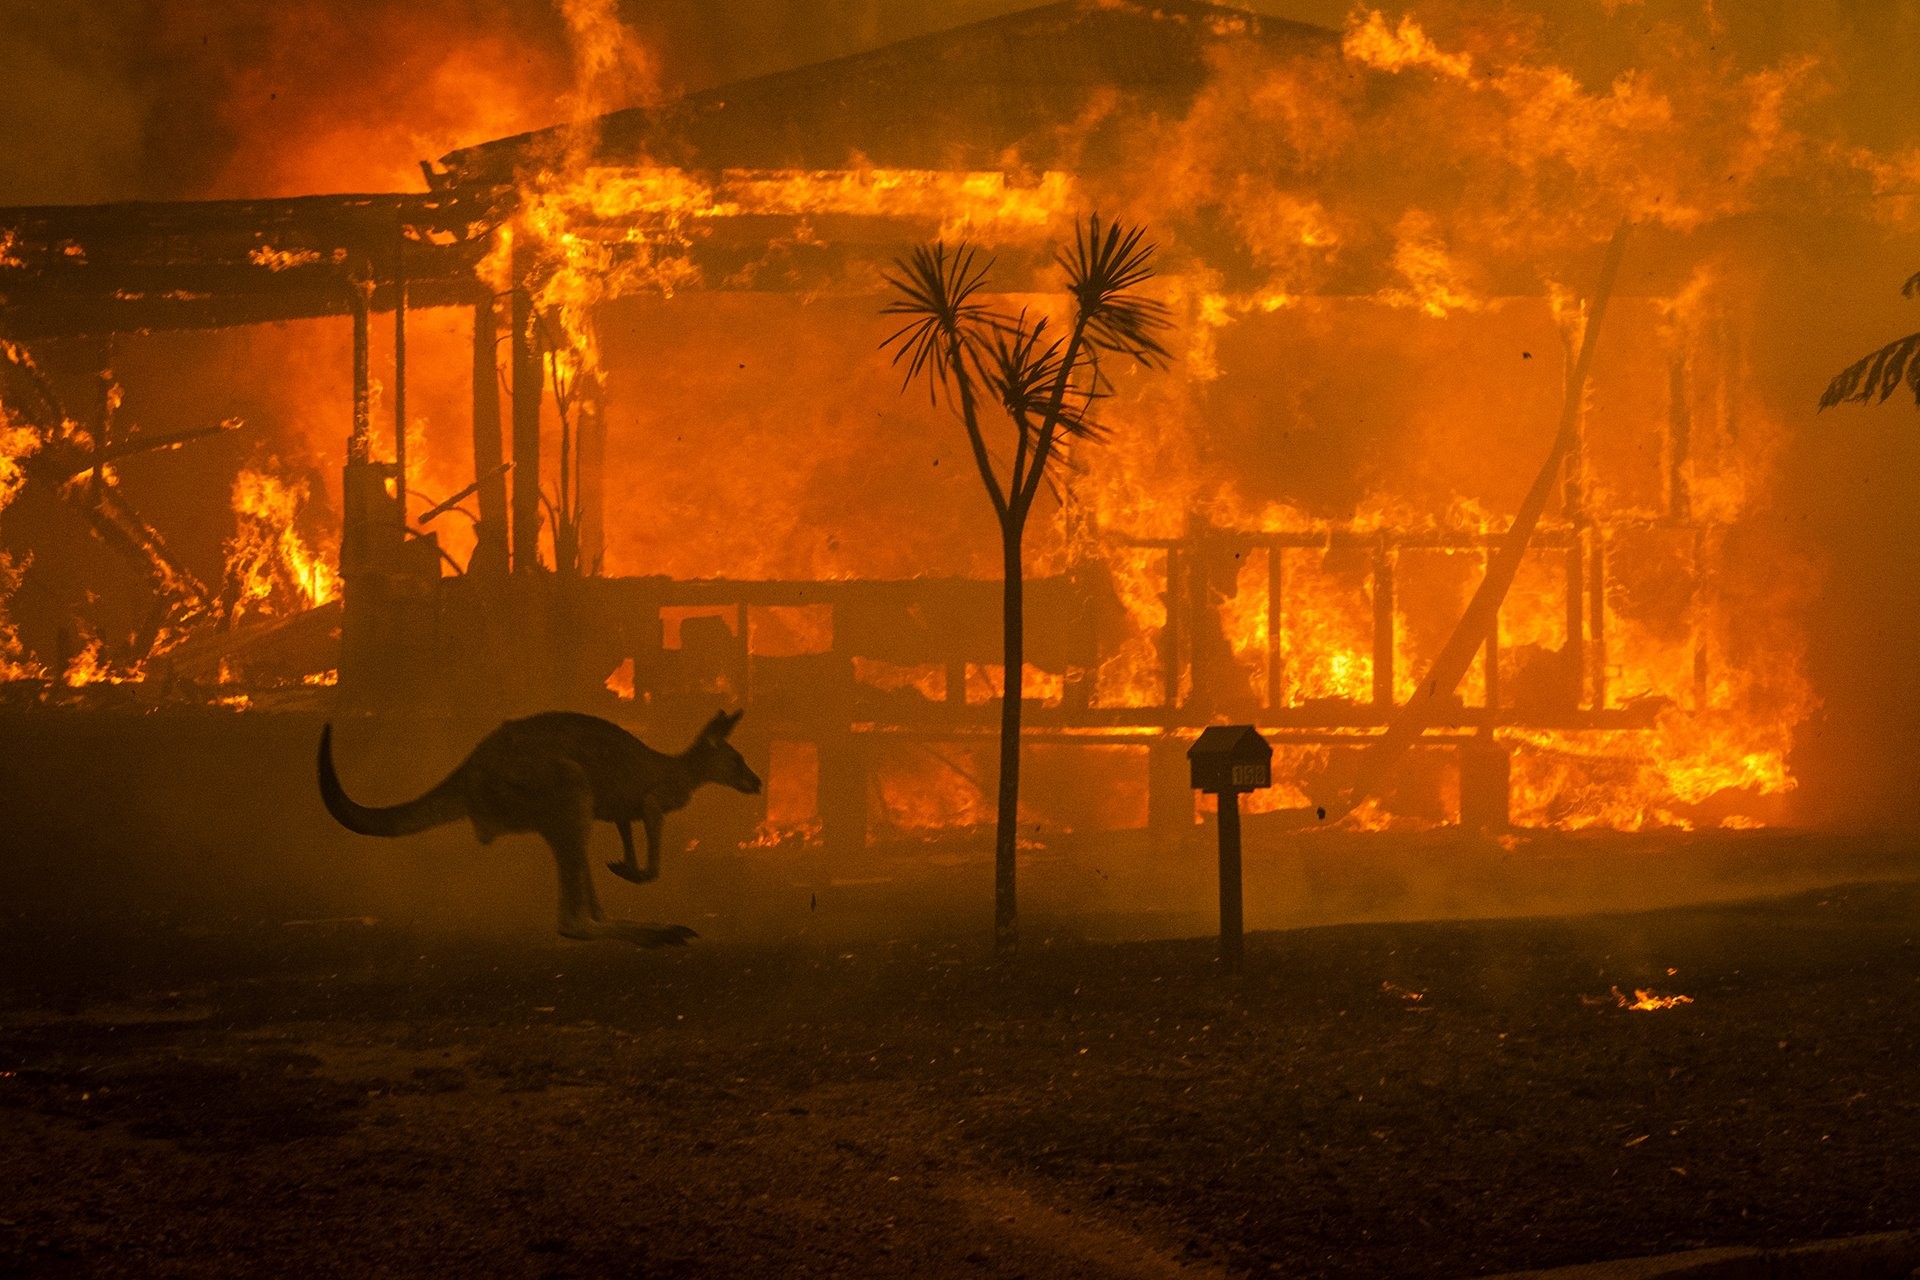 2 место в категории Срочные новости, фотосерии, 2020. Кенгуру пытается спастись от лесного пожара возле горящего дома в Новом Южном Уэльсе, Австралия. Автор Мэтью Эбботт